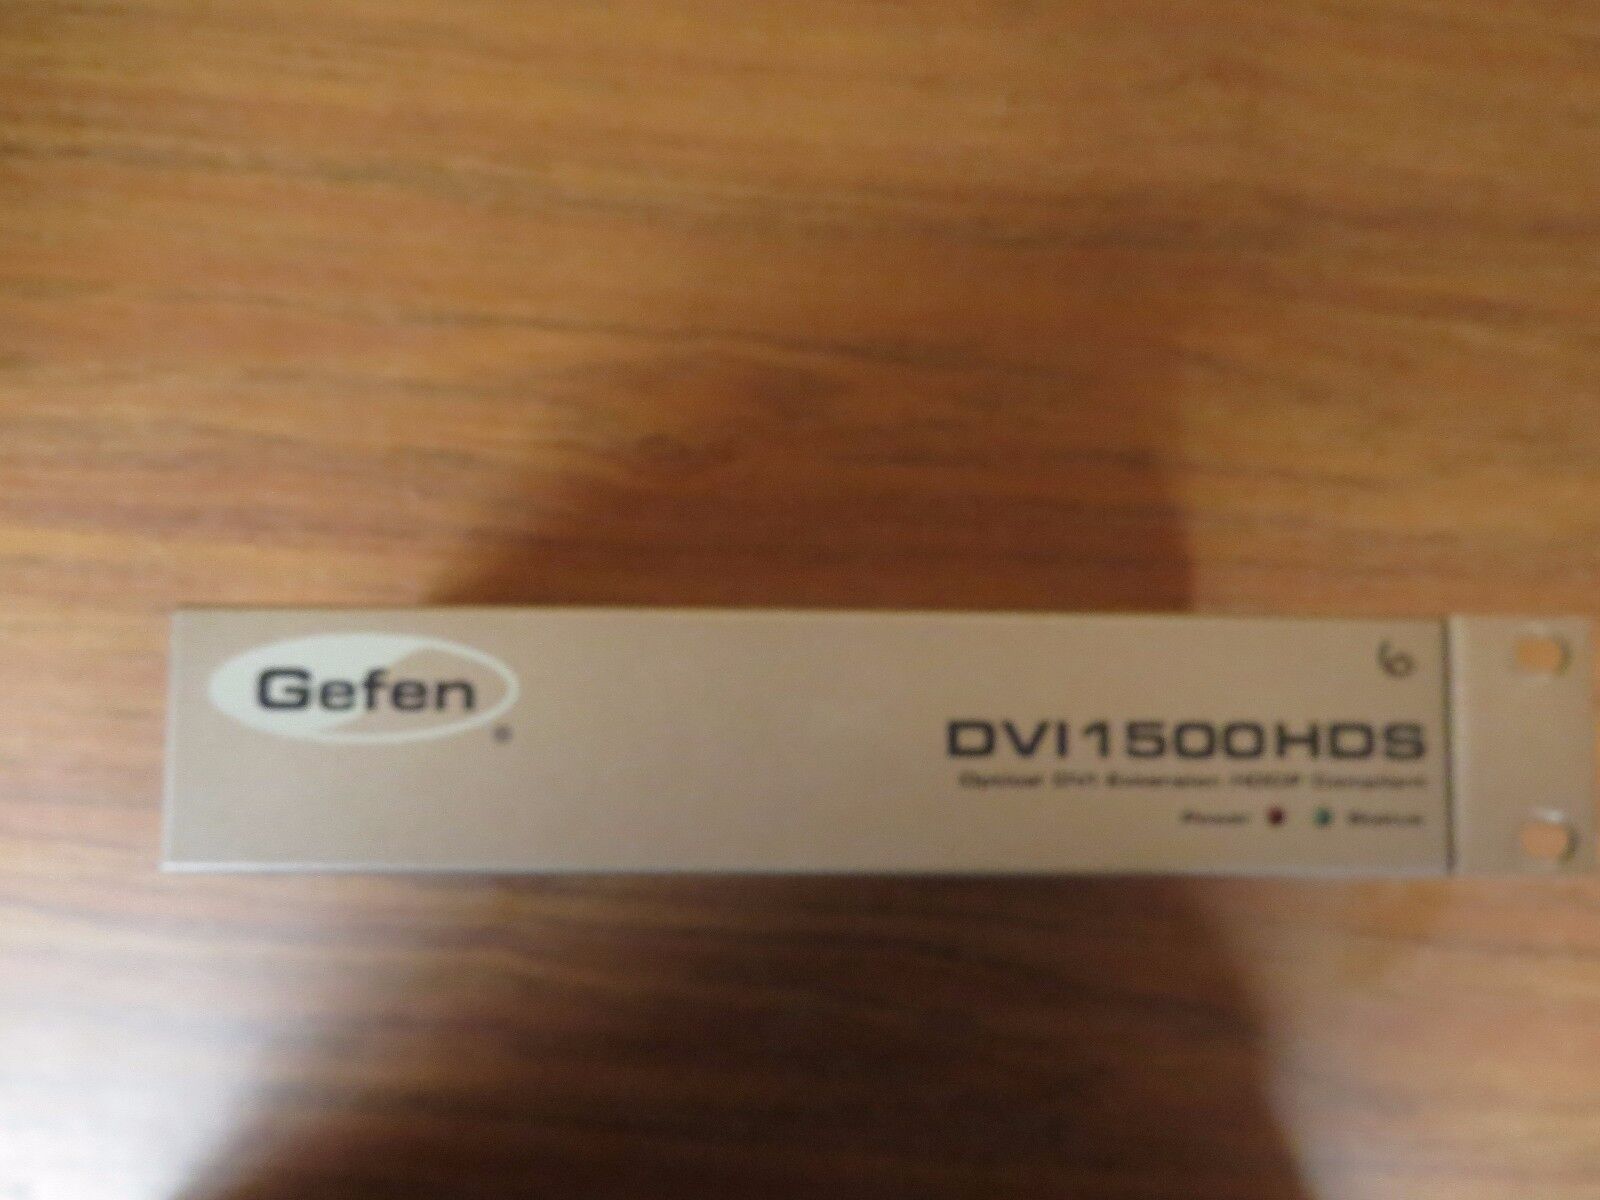 + Gefen, DVI 1500HDS, Optical DVI Extension HDCP Compliant.